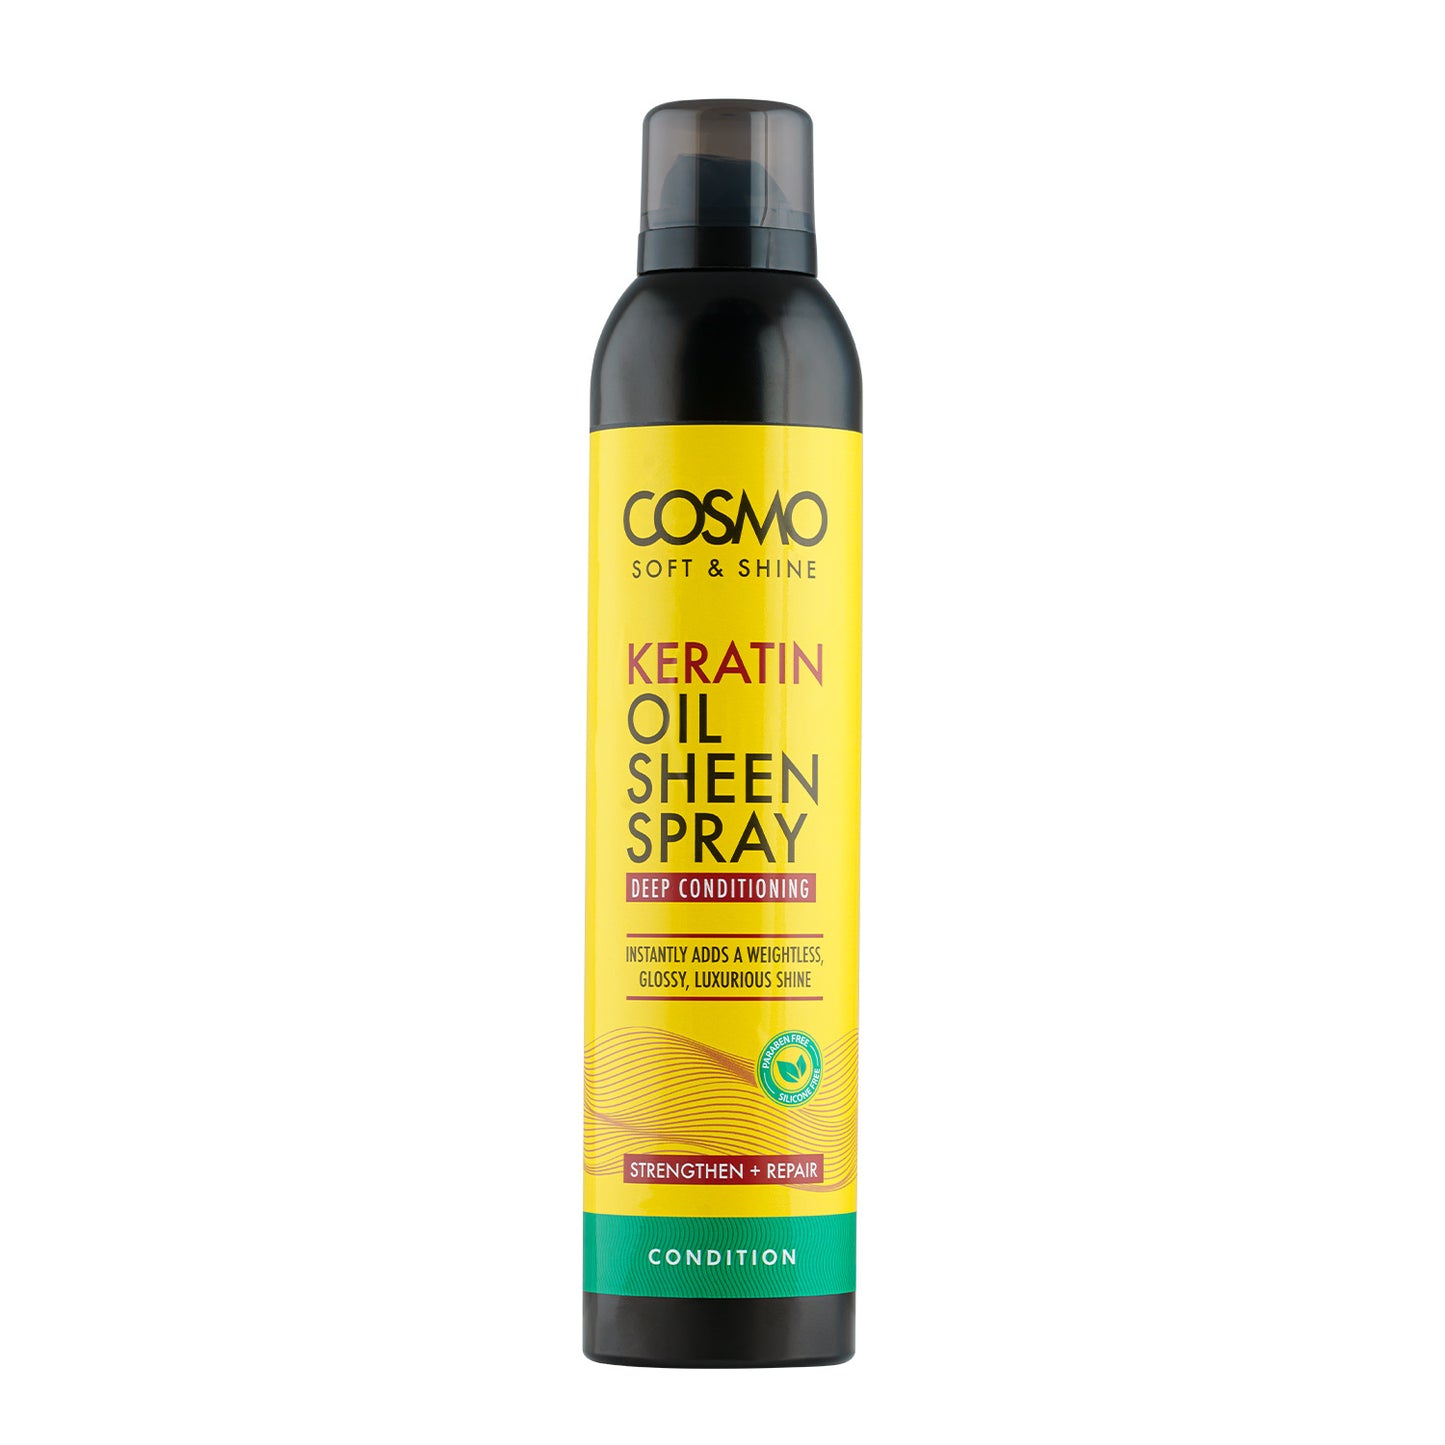 COSMO SOFT & SHINE KERATIN OIL SHEEN SPRAY CONDITION - 300ML